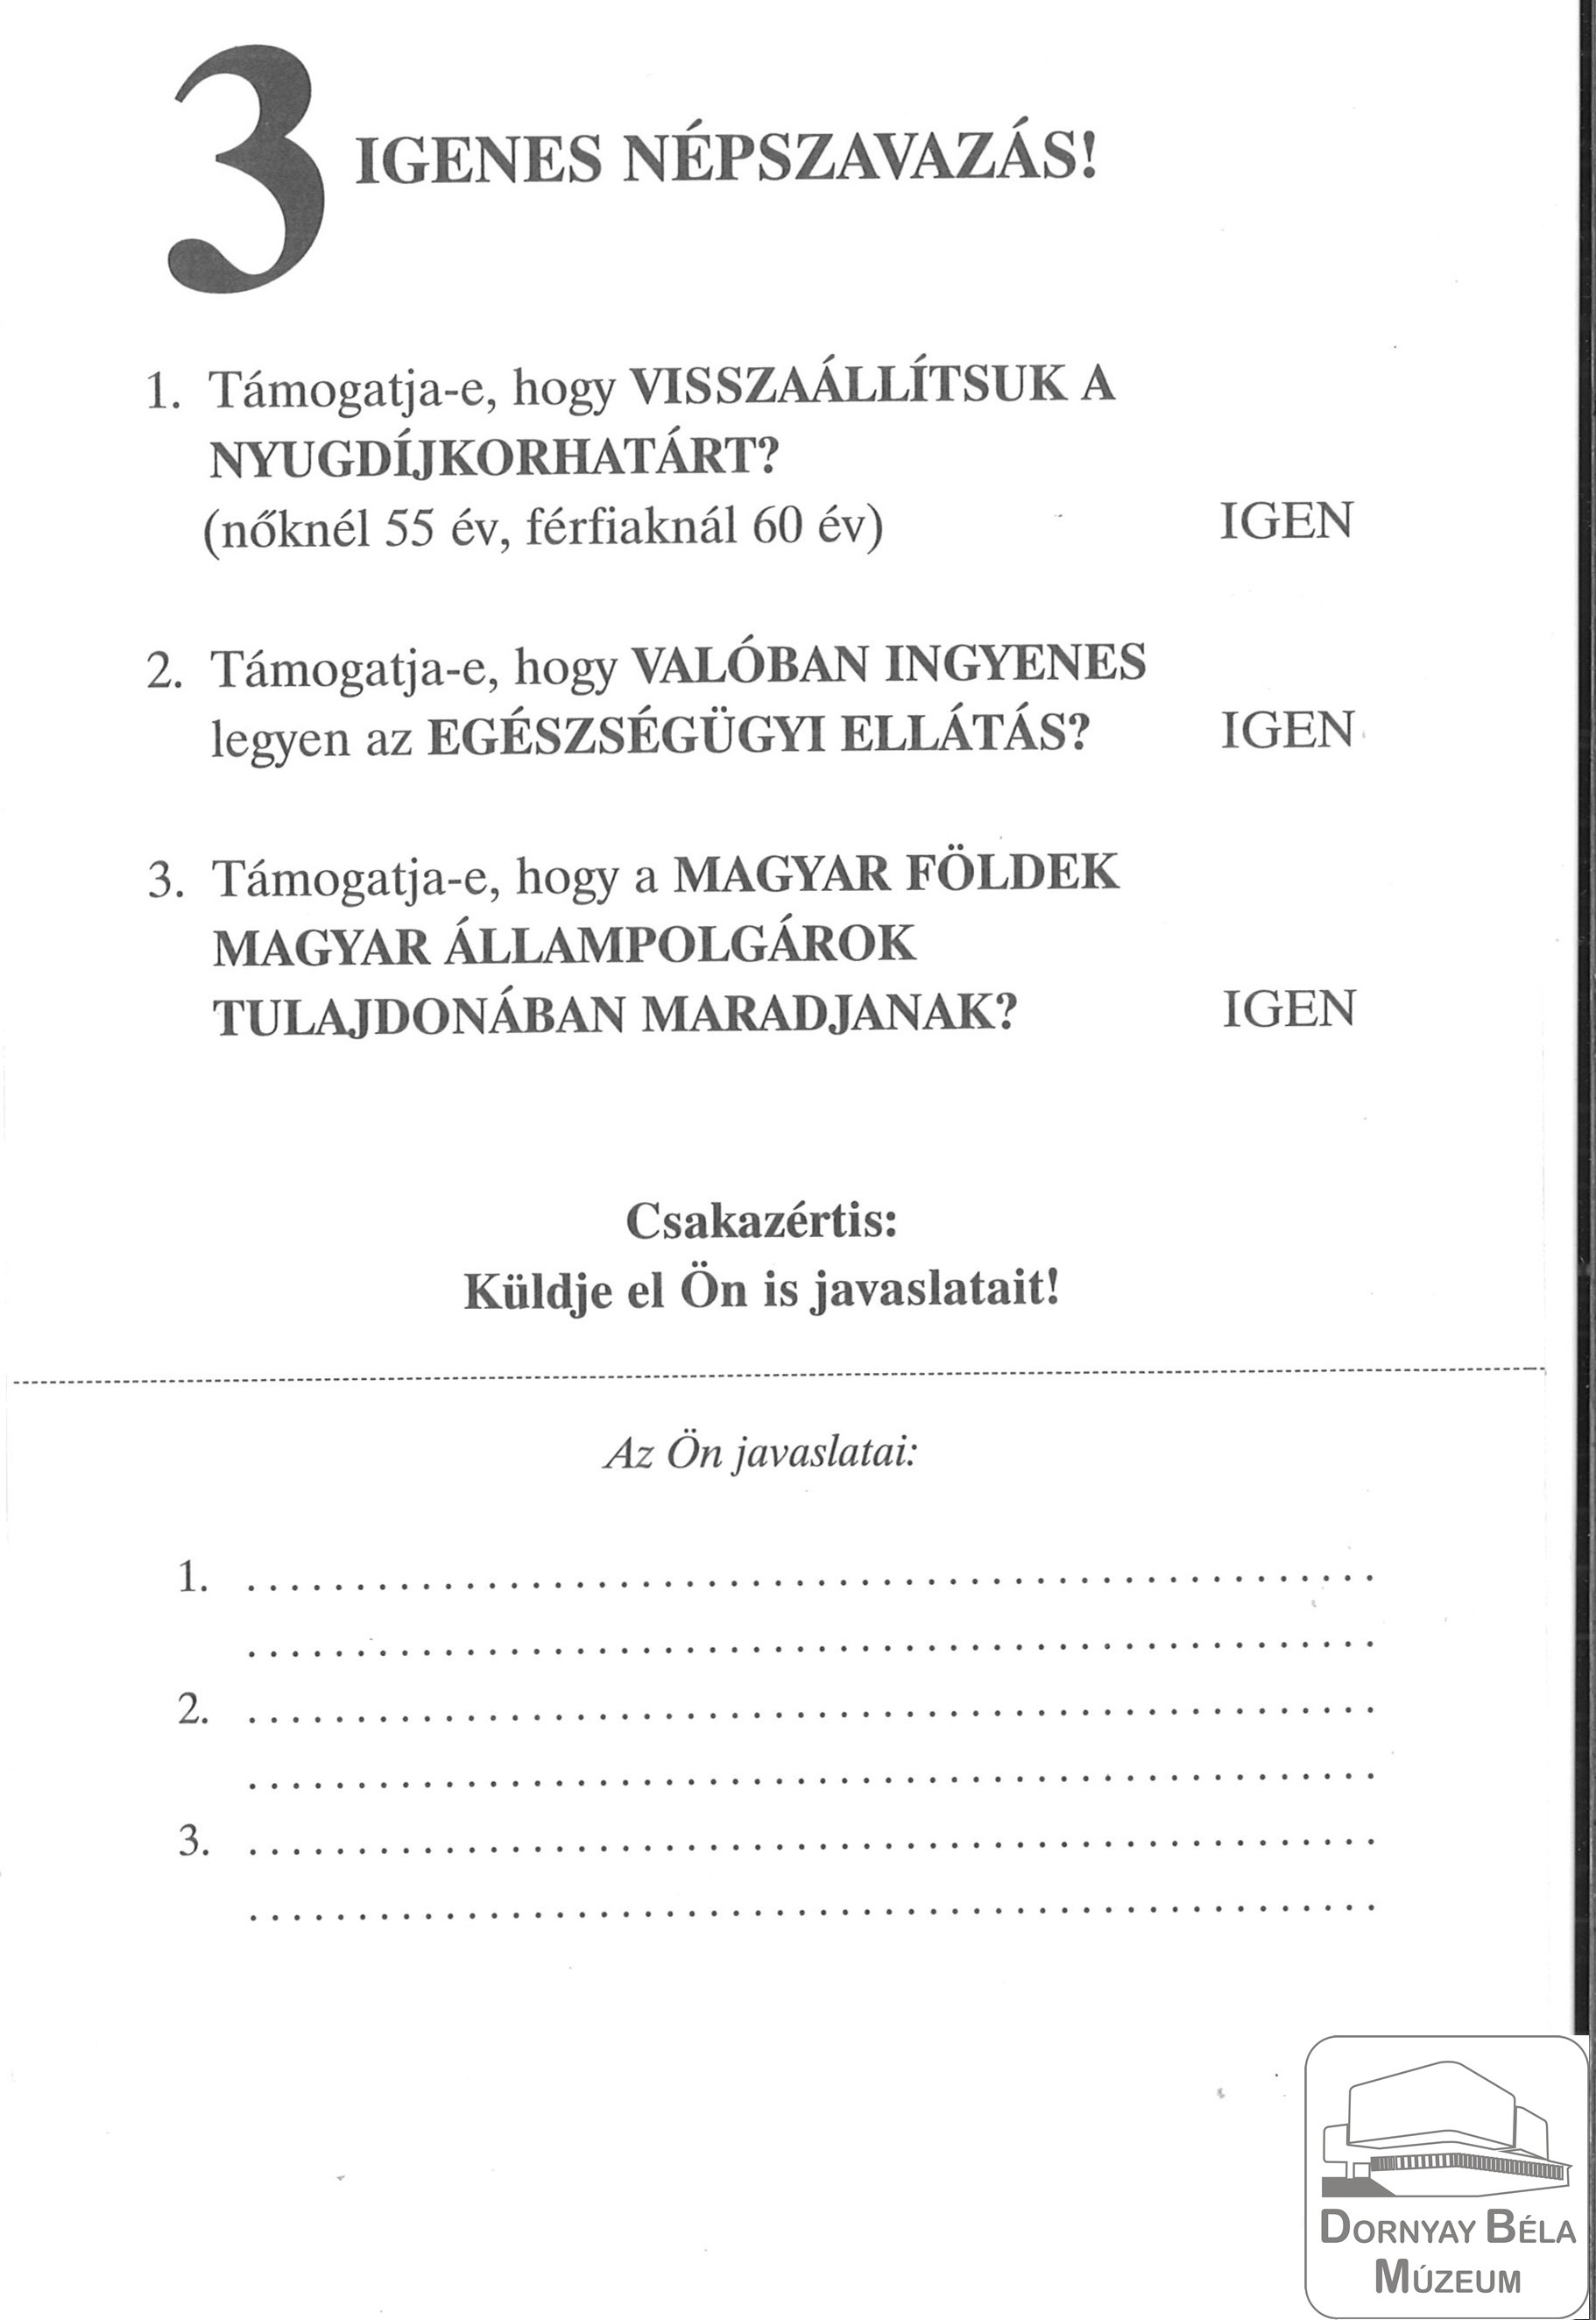 FKGP Népszavazással kapcsolatos, kezdeményezést propagáló röplap (Dornyay Béla Múzeum, Salgótarján CC BY-NC-SA)